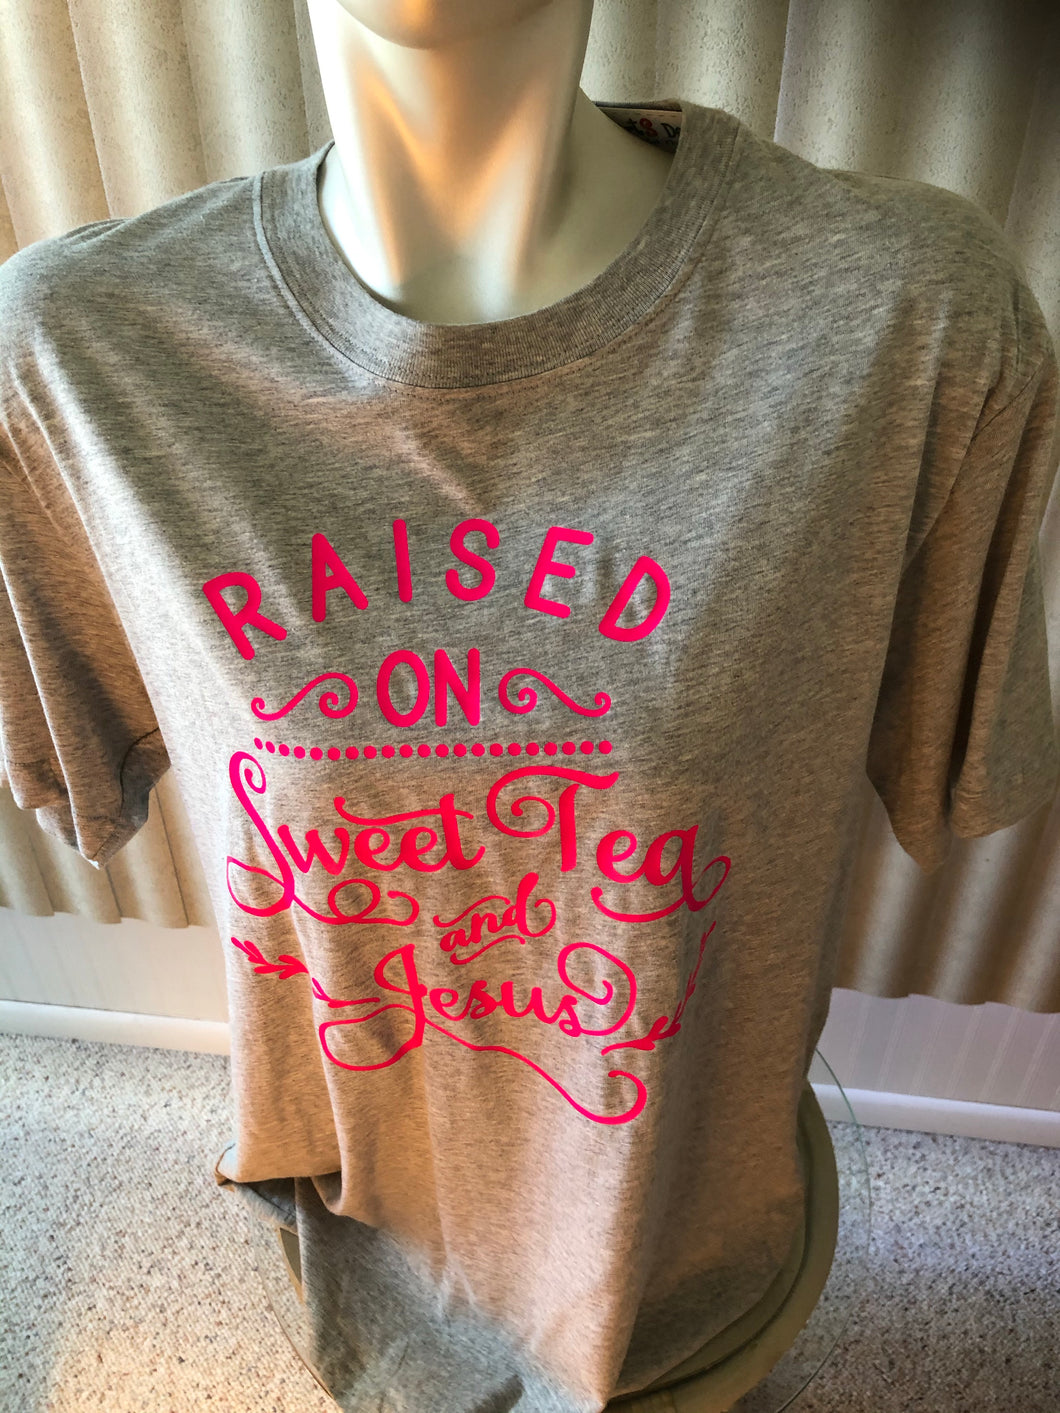 Joe Boxer Large unisex tee shirt Raised on Sweet tea and Jesus